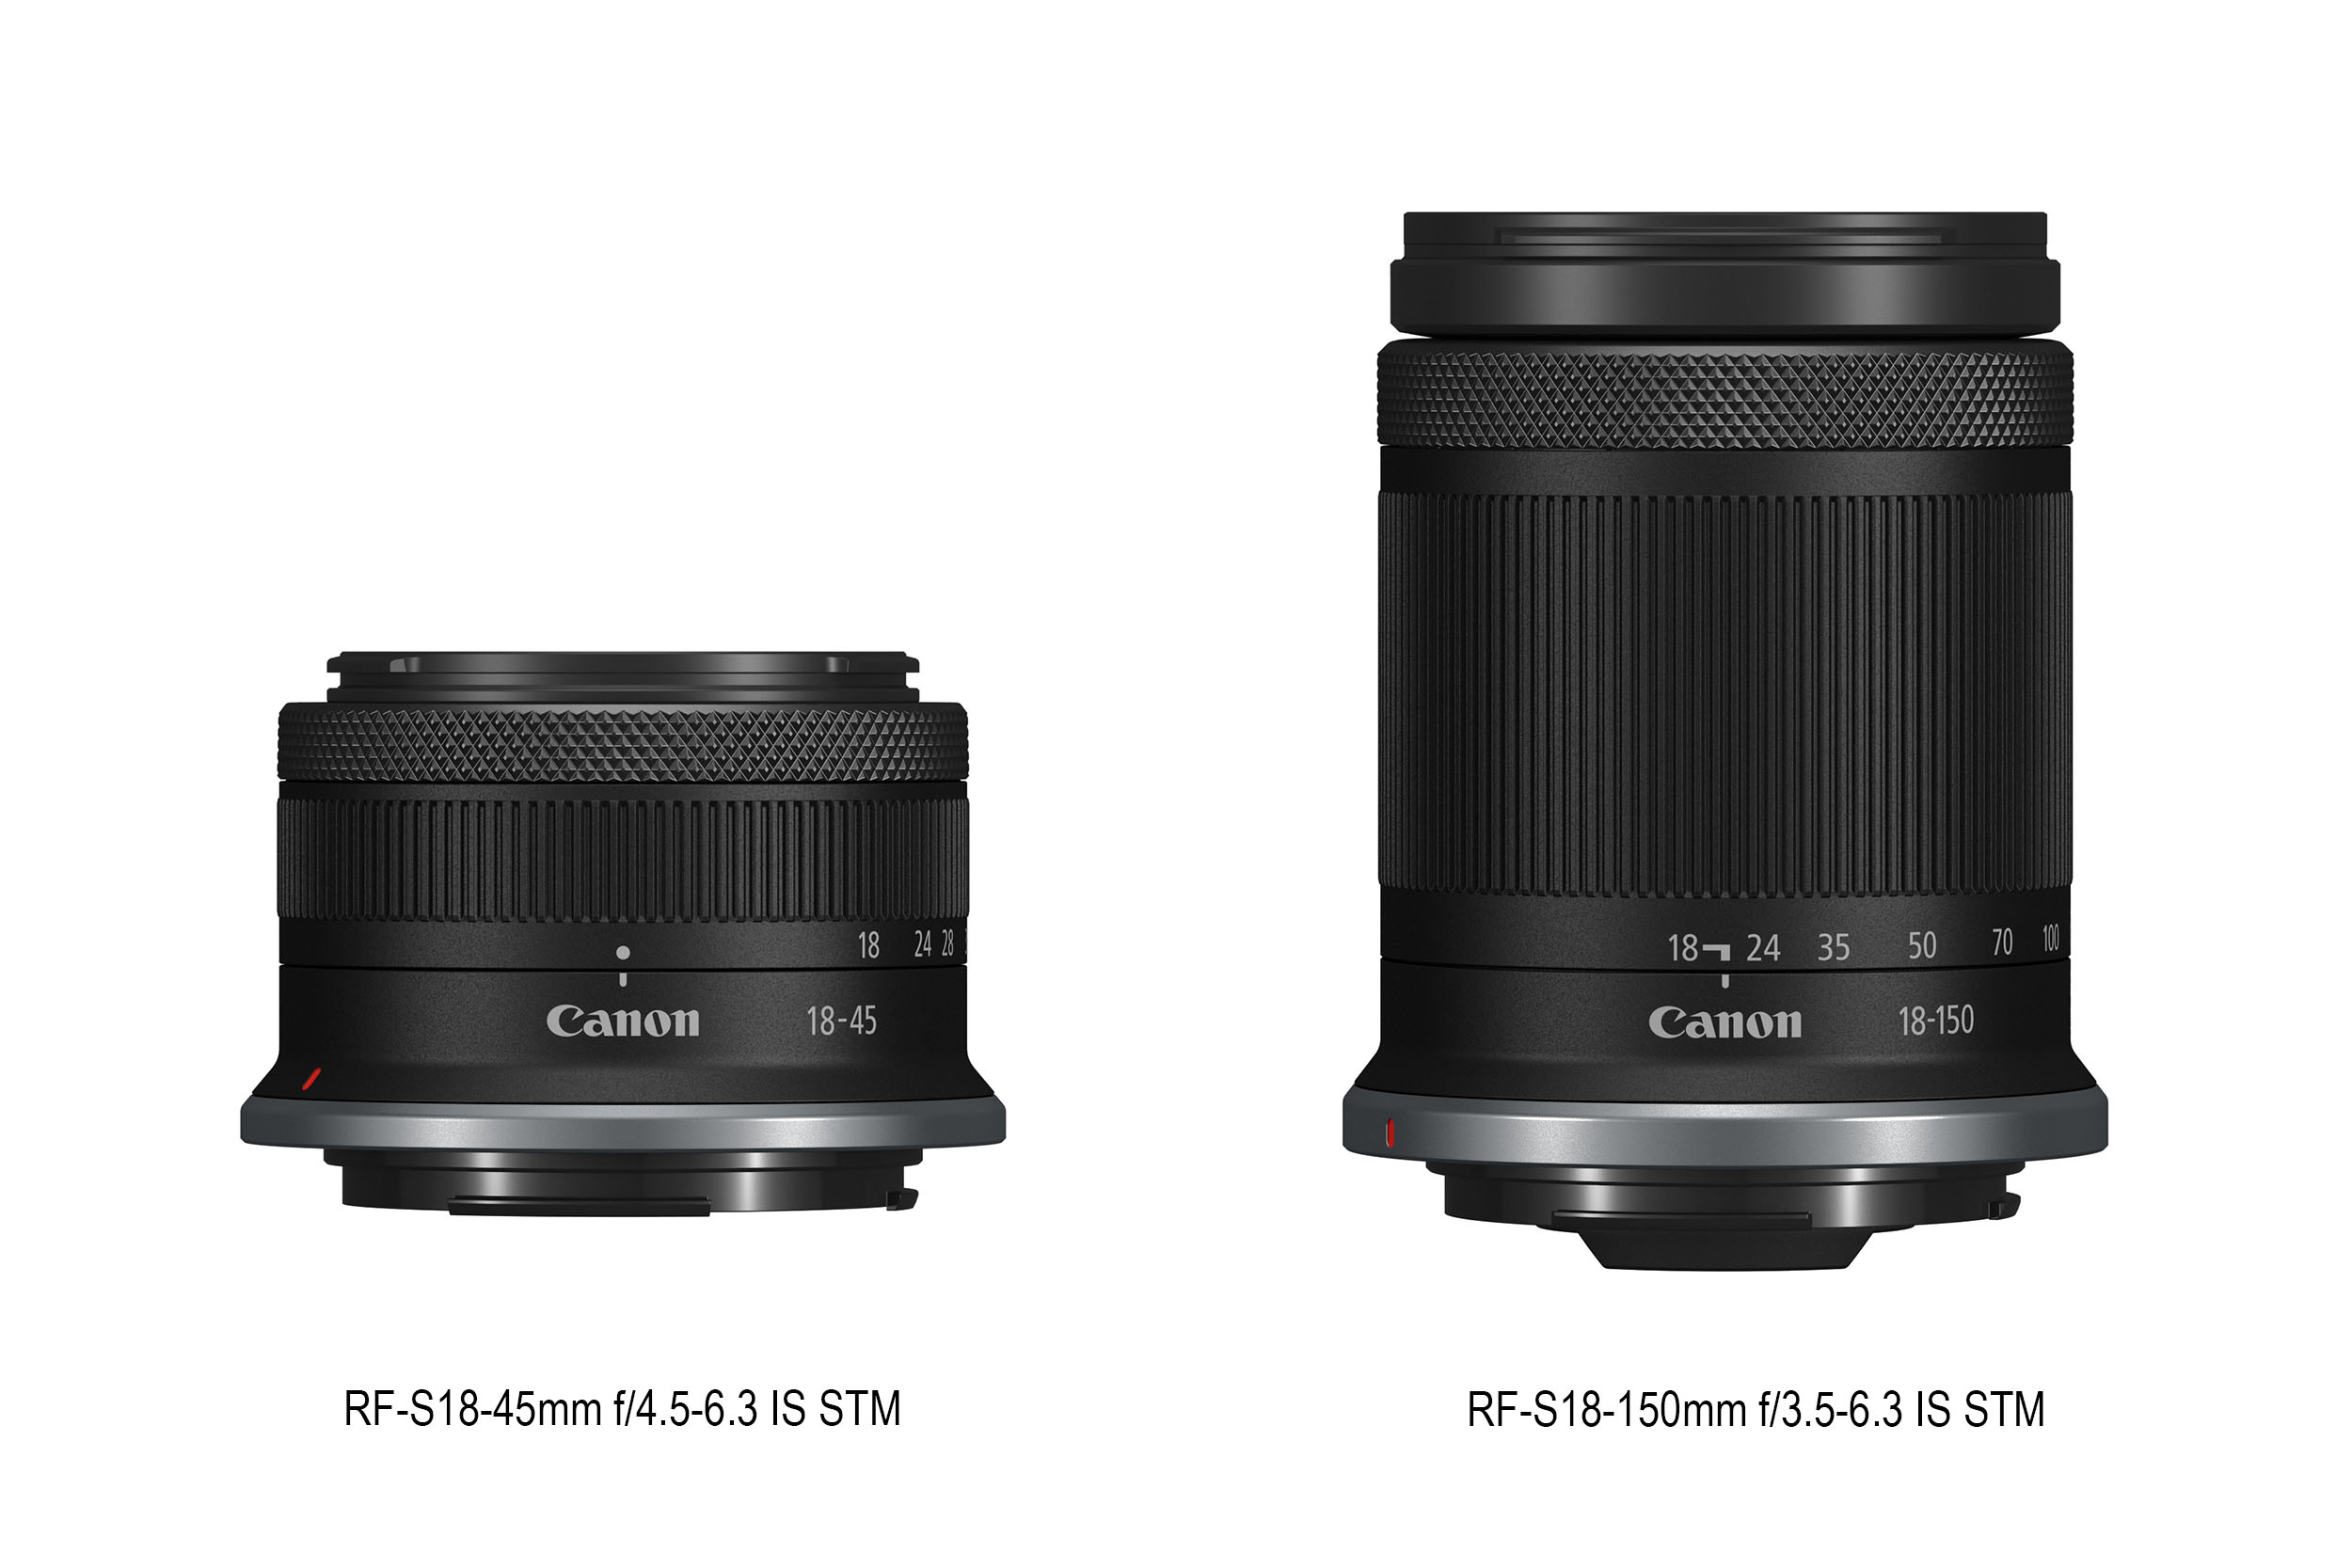 Lensa kit RF-S18-150mm (kiri) dan RF-18-45mm (kanan). (Sumber gambar: Canon/Datascript)